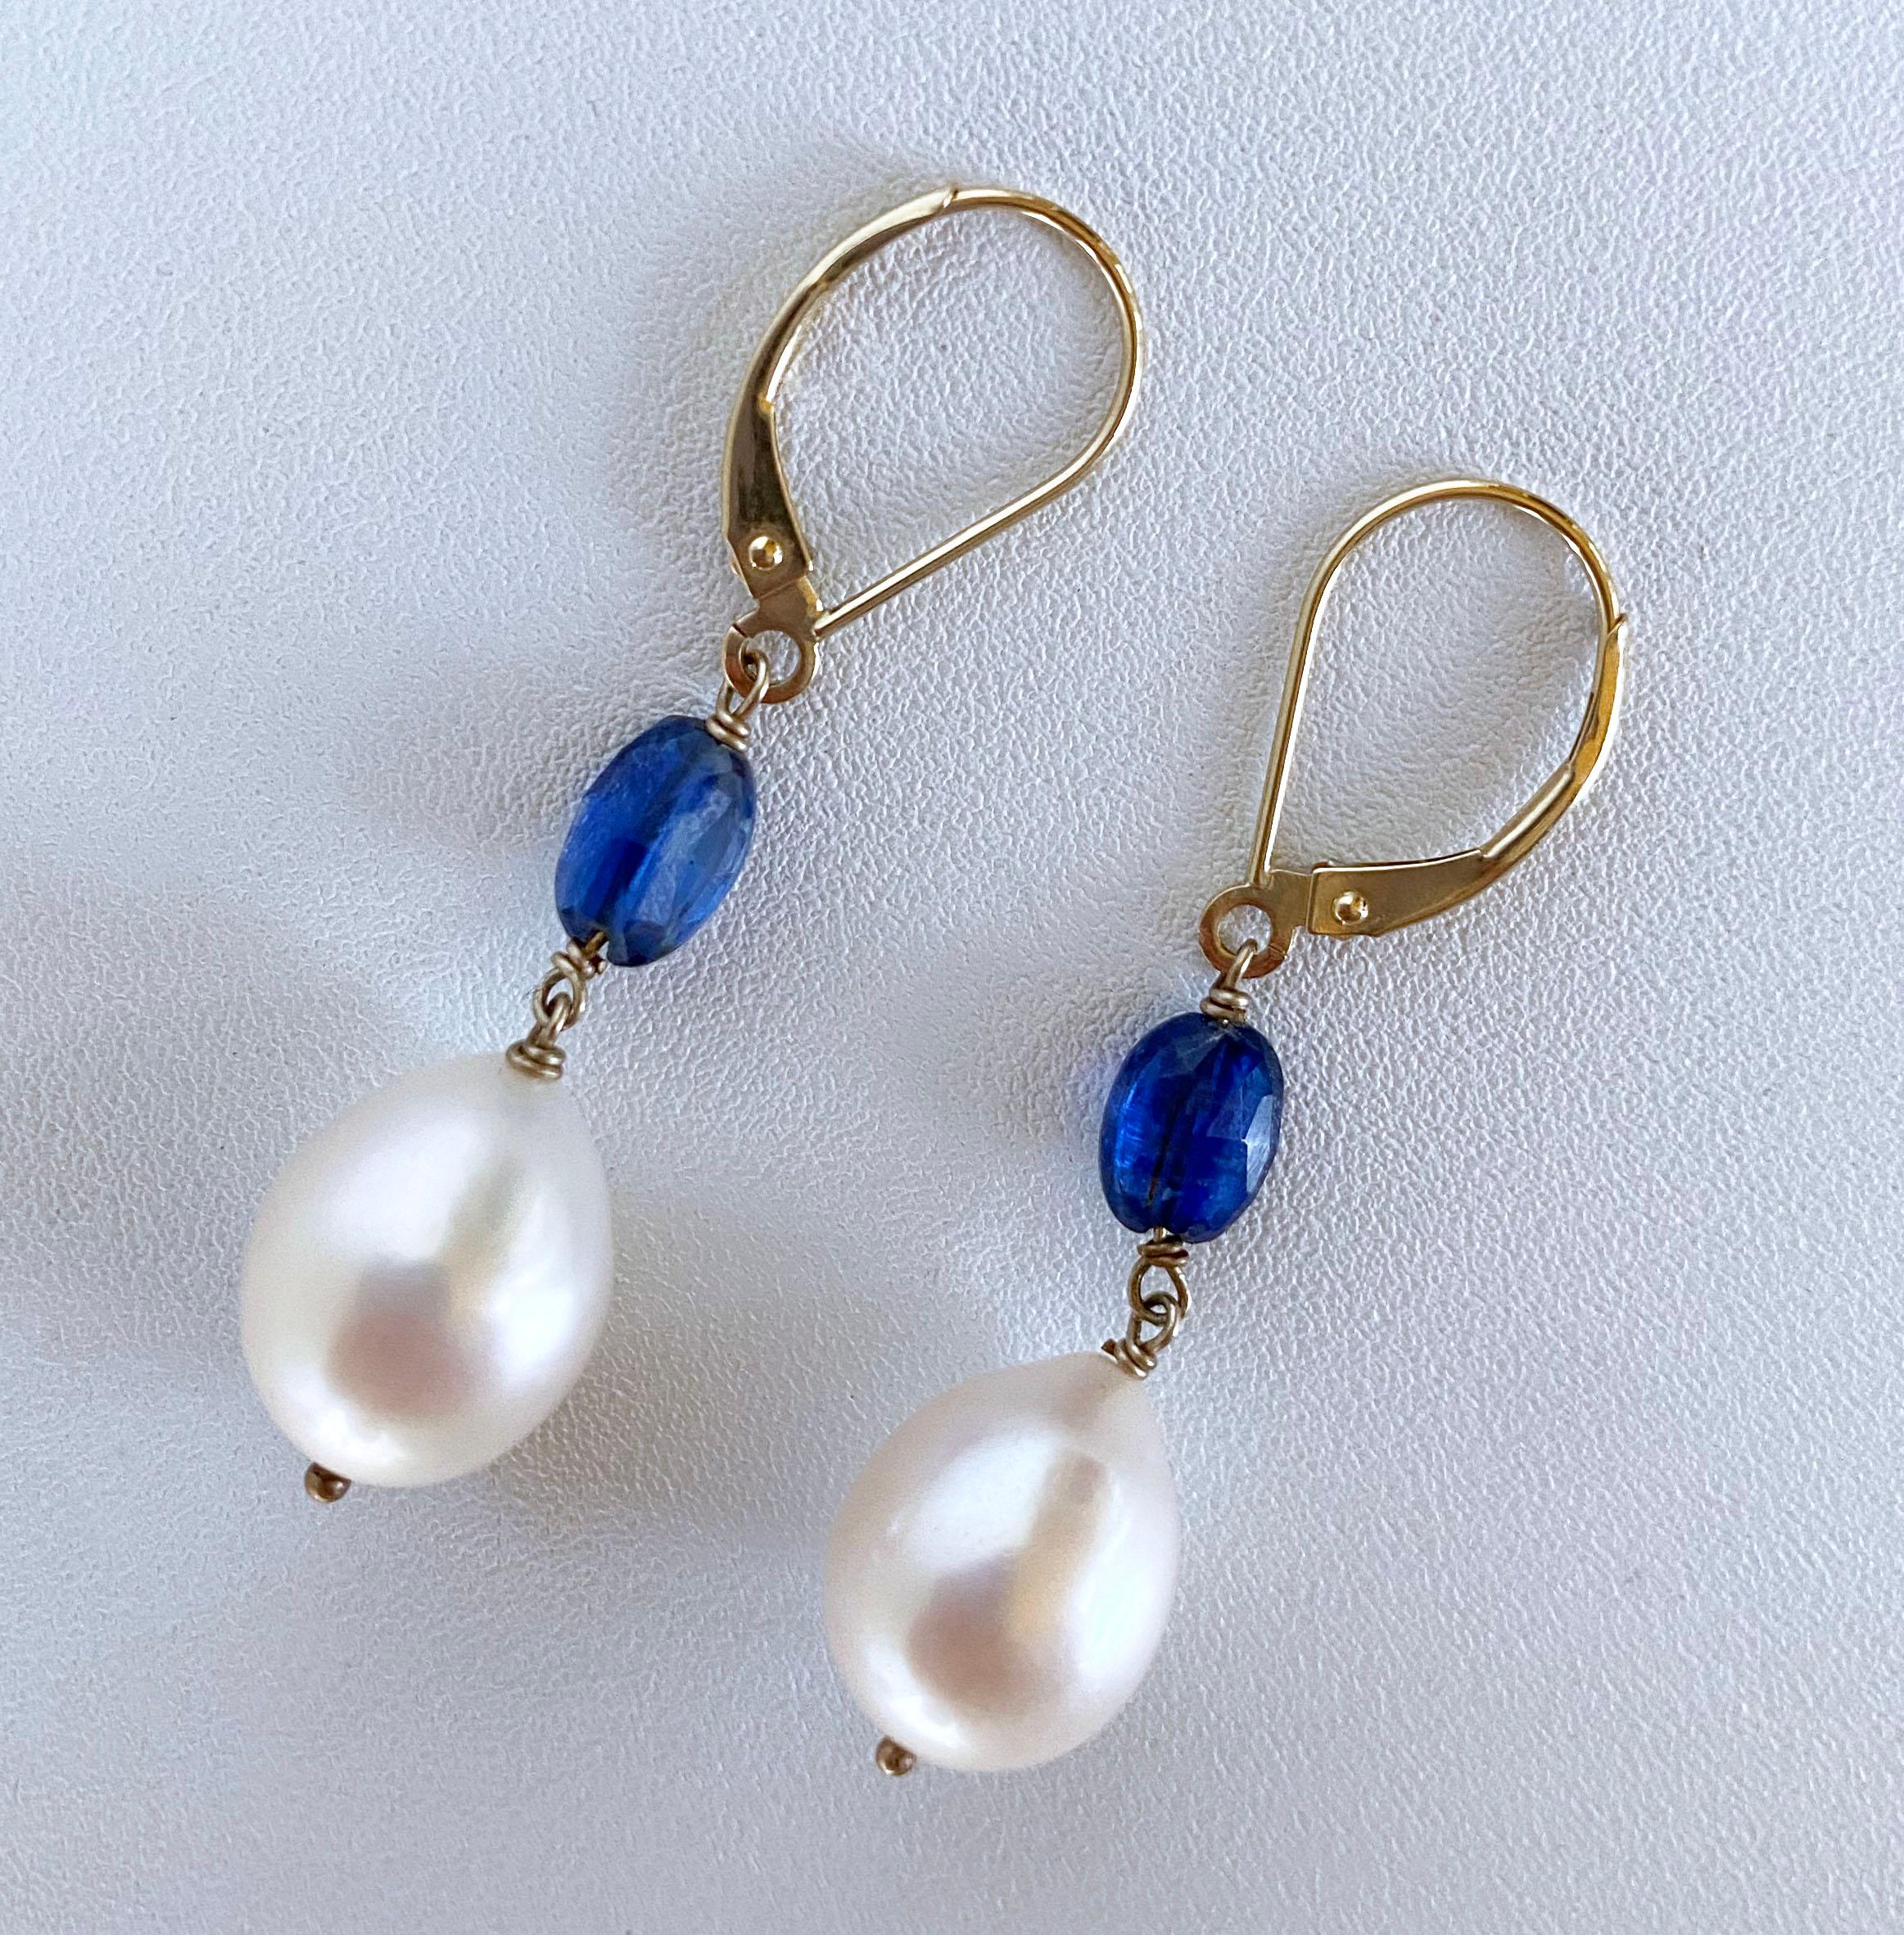 Wunderschönes und schlichtes Paar Ohrringe von Marina J. in Los Angeles. Dieses Paar besteht aus zwei wunderschönen flachen und facettierten ovalen Perlen aus blauem Kyanit, an denen leicht barocke cremefarbene Perlen hängen. Die